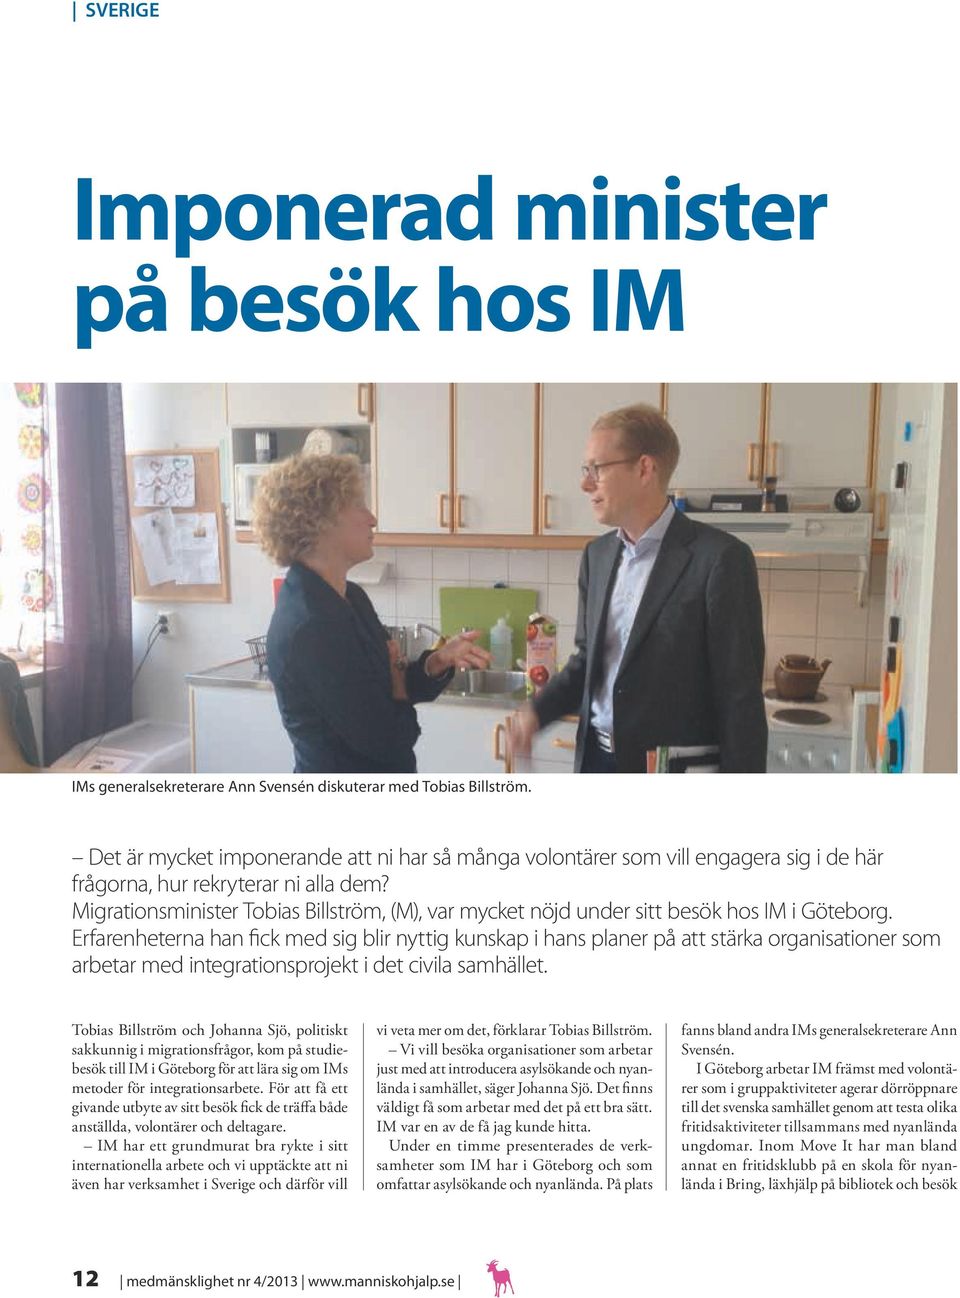 Migrationsminister Tobias Billström, (M), var mycket nöjd under sitt besök hos IM i Göteborg.